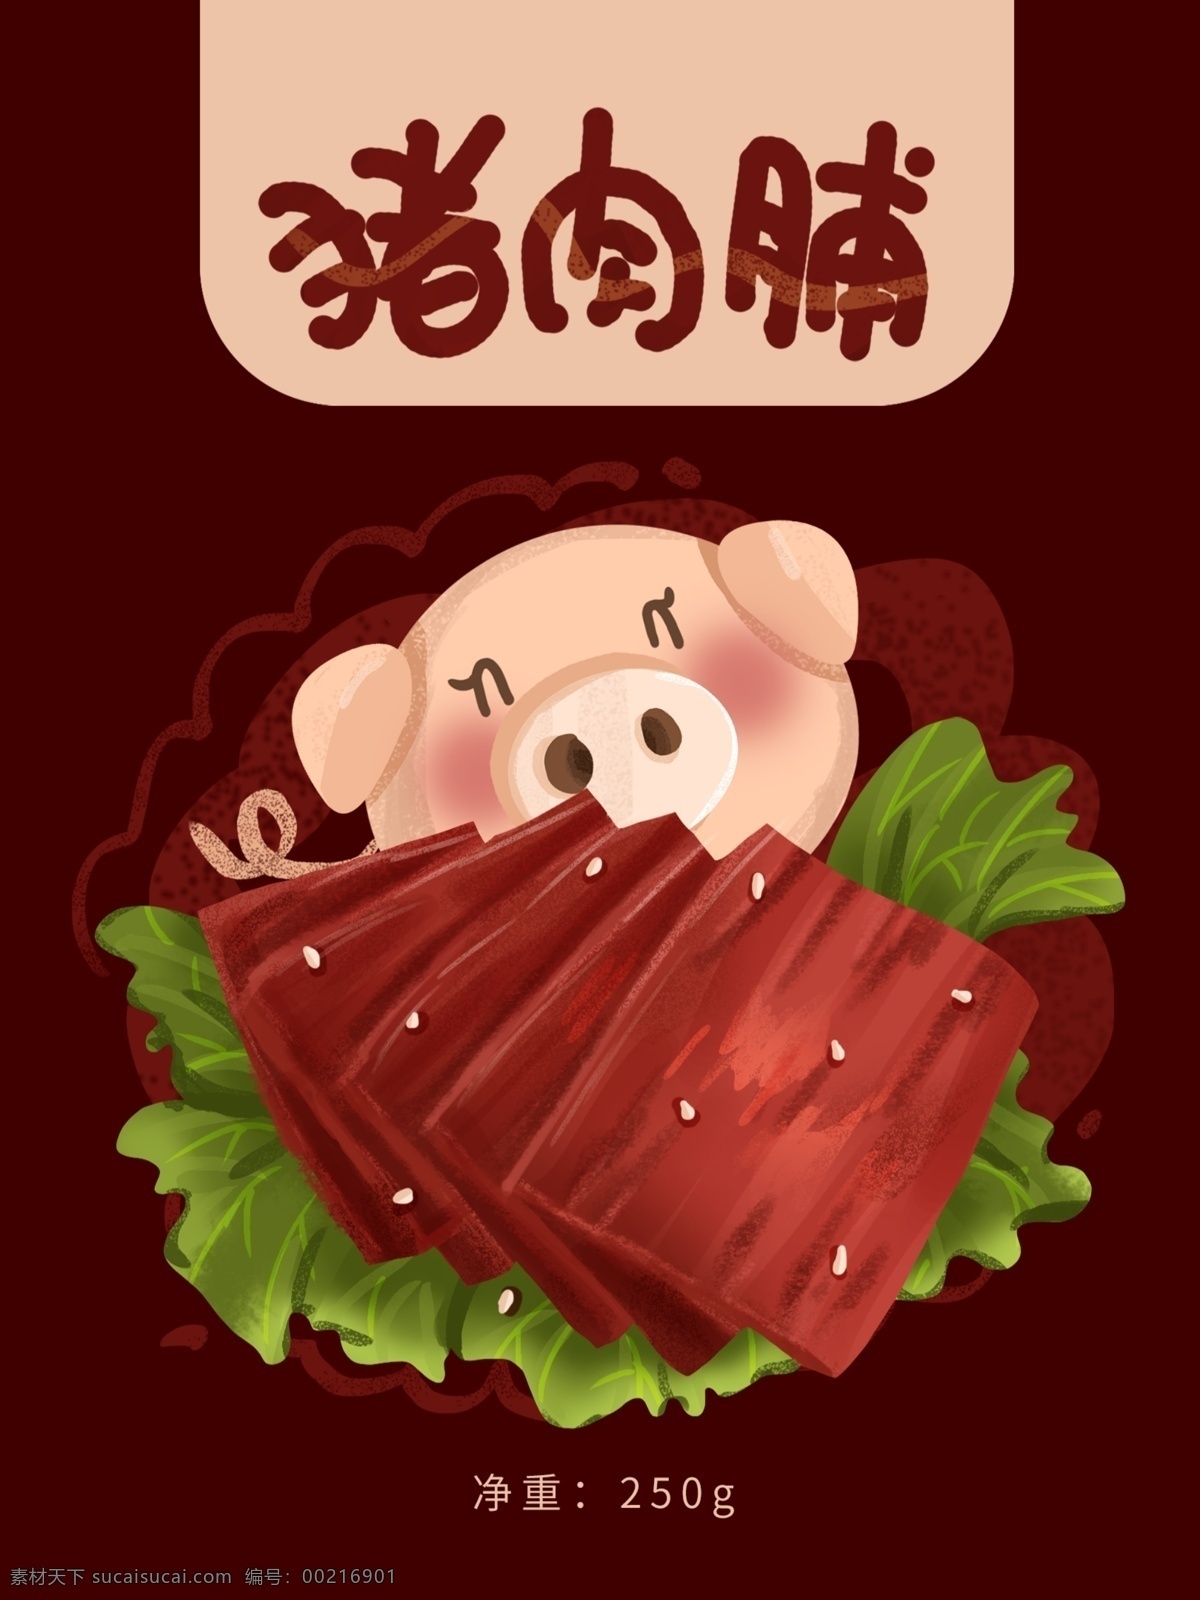 食品包装 猪 肉脯 肉类 插画 猪肉脯 包装 肉 菜叶 棕红色 肉类包装 可爱